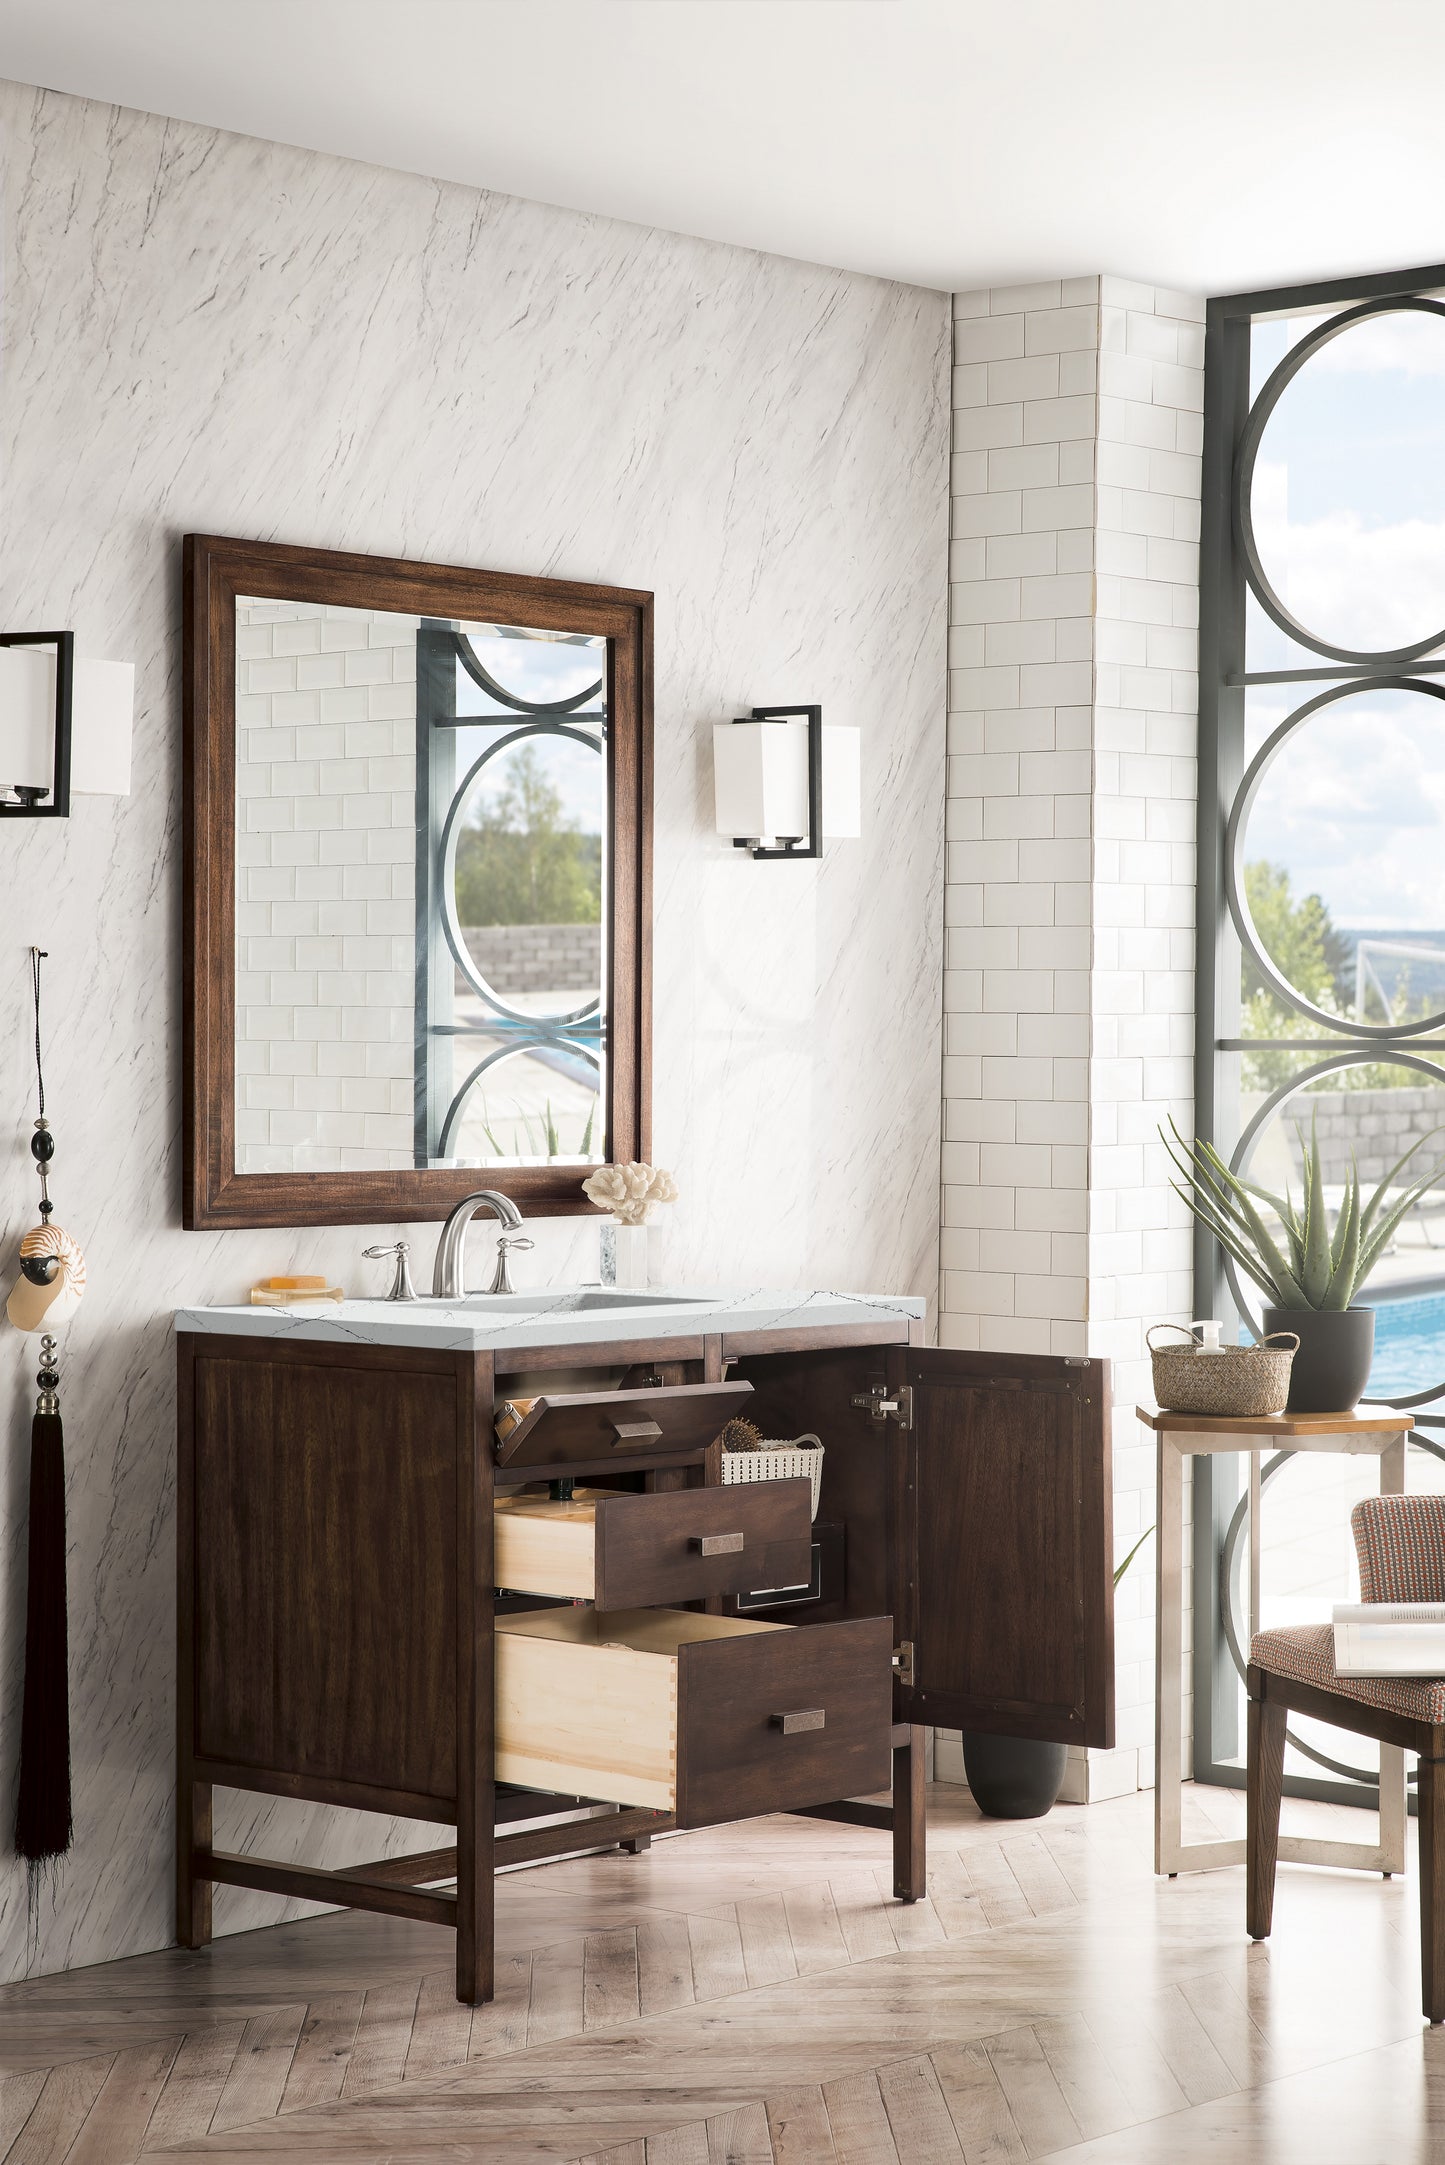 James Martin Addison 36" Single Vanity Cabinet with 3 CM Countertop - Luxe Bathroom Vanities